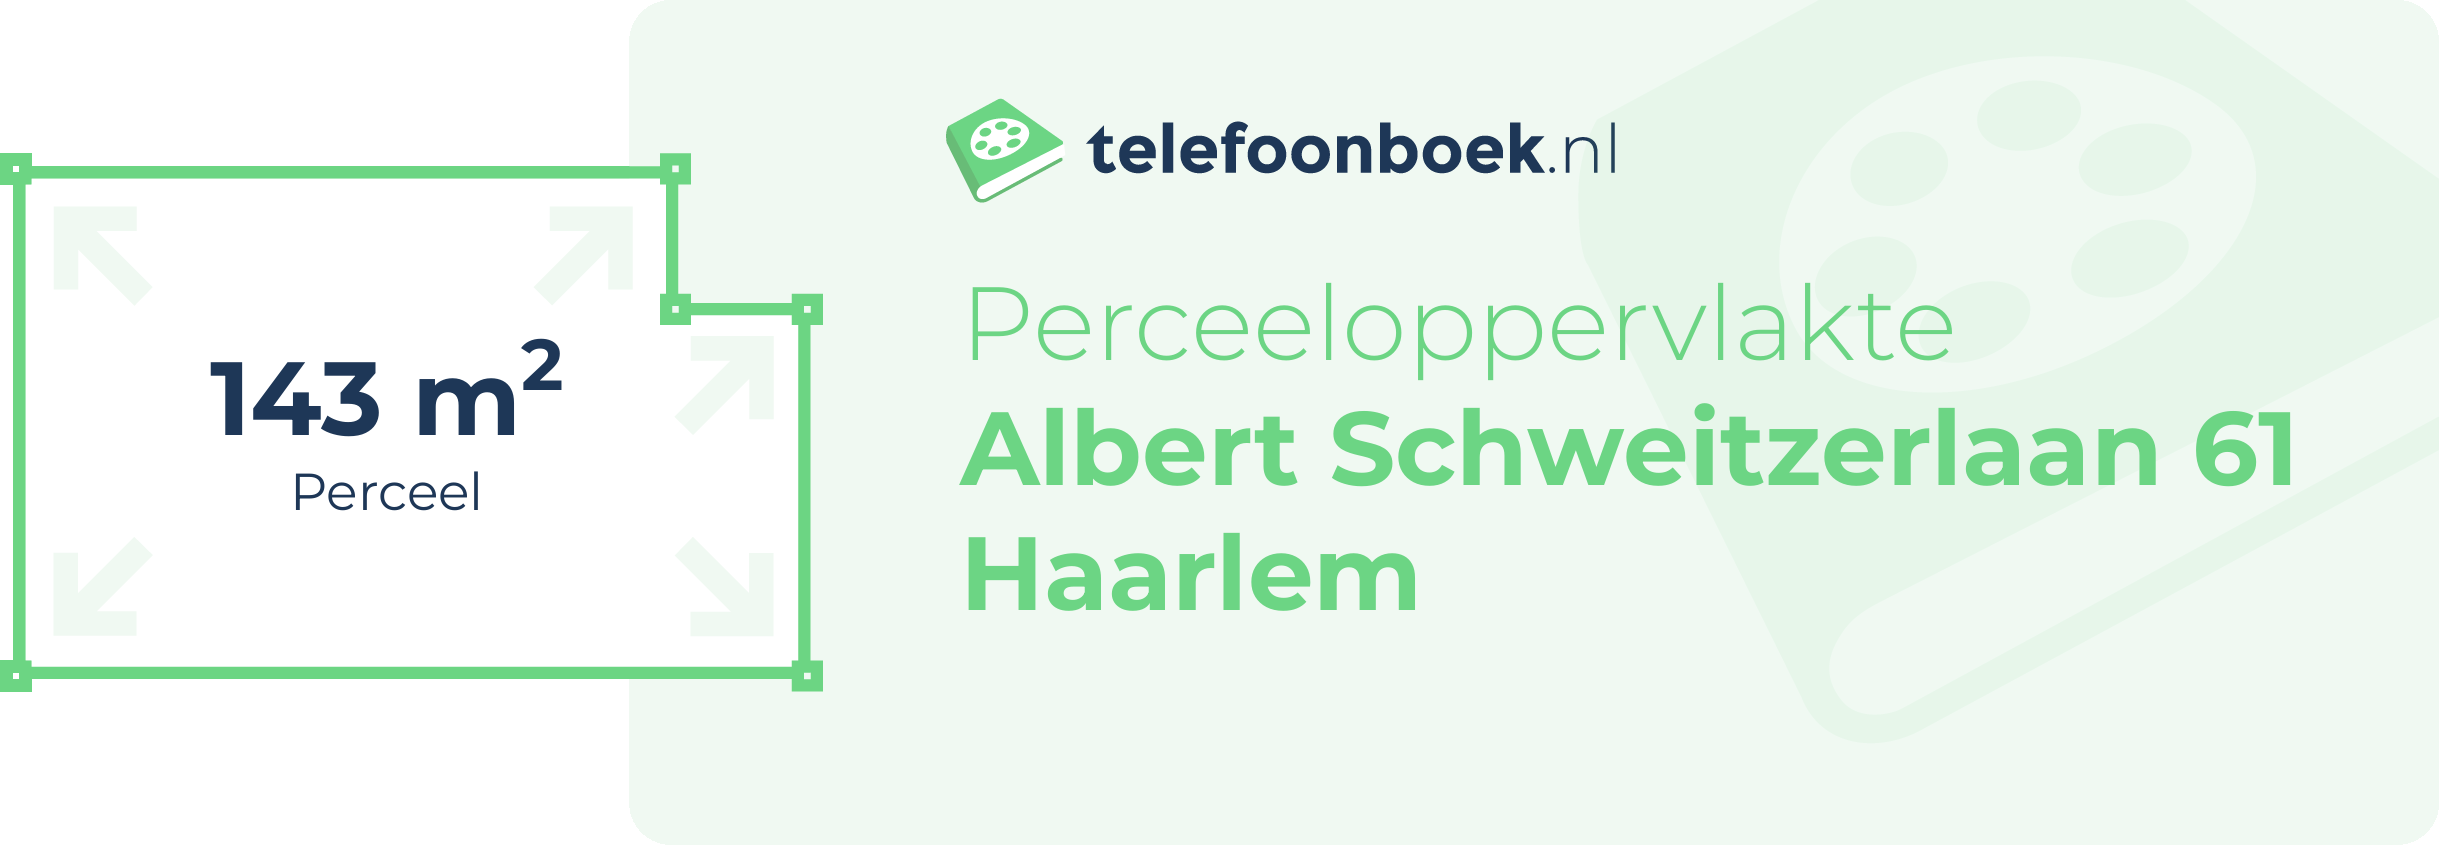 Perceeloppervlakte Albert Schweitzerlaan 61 Haarlem